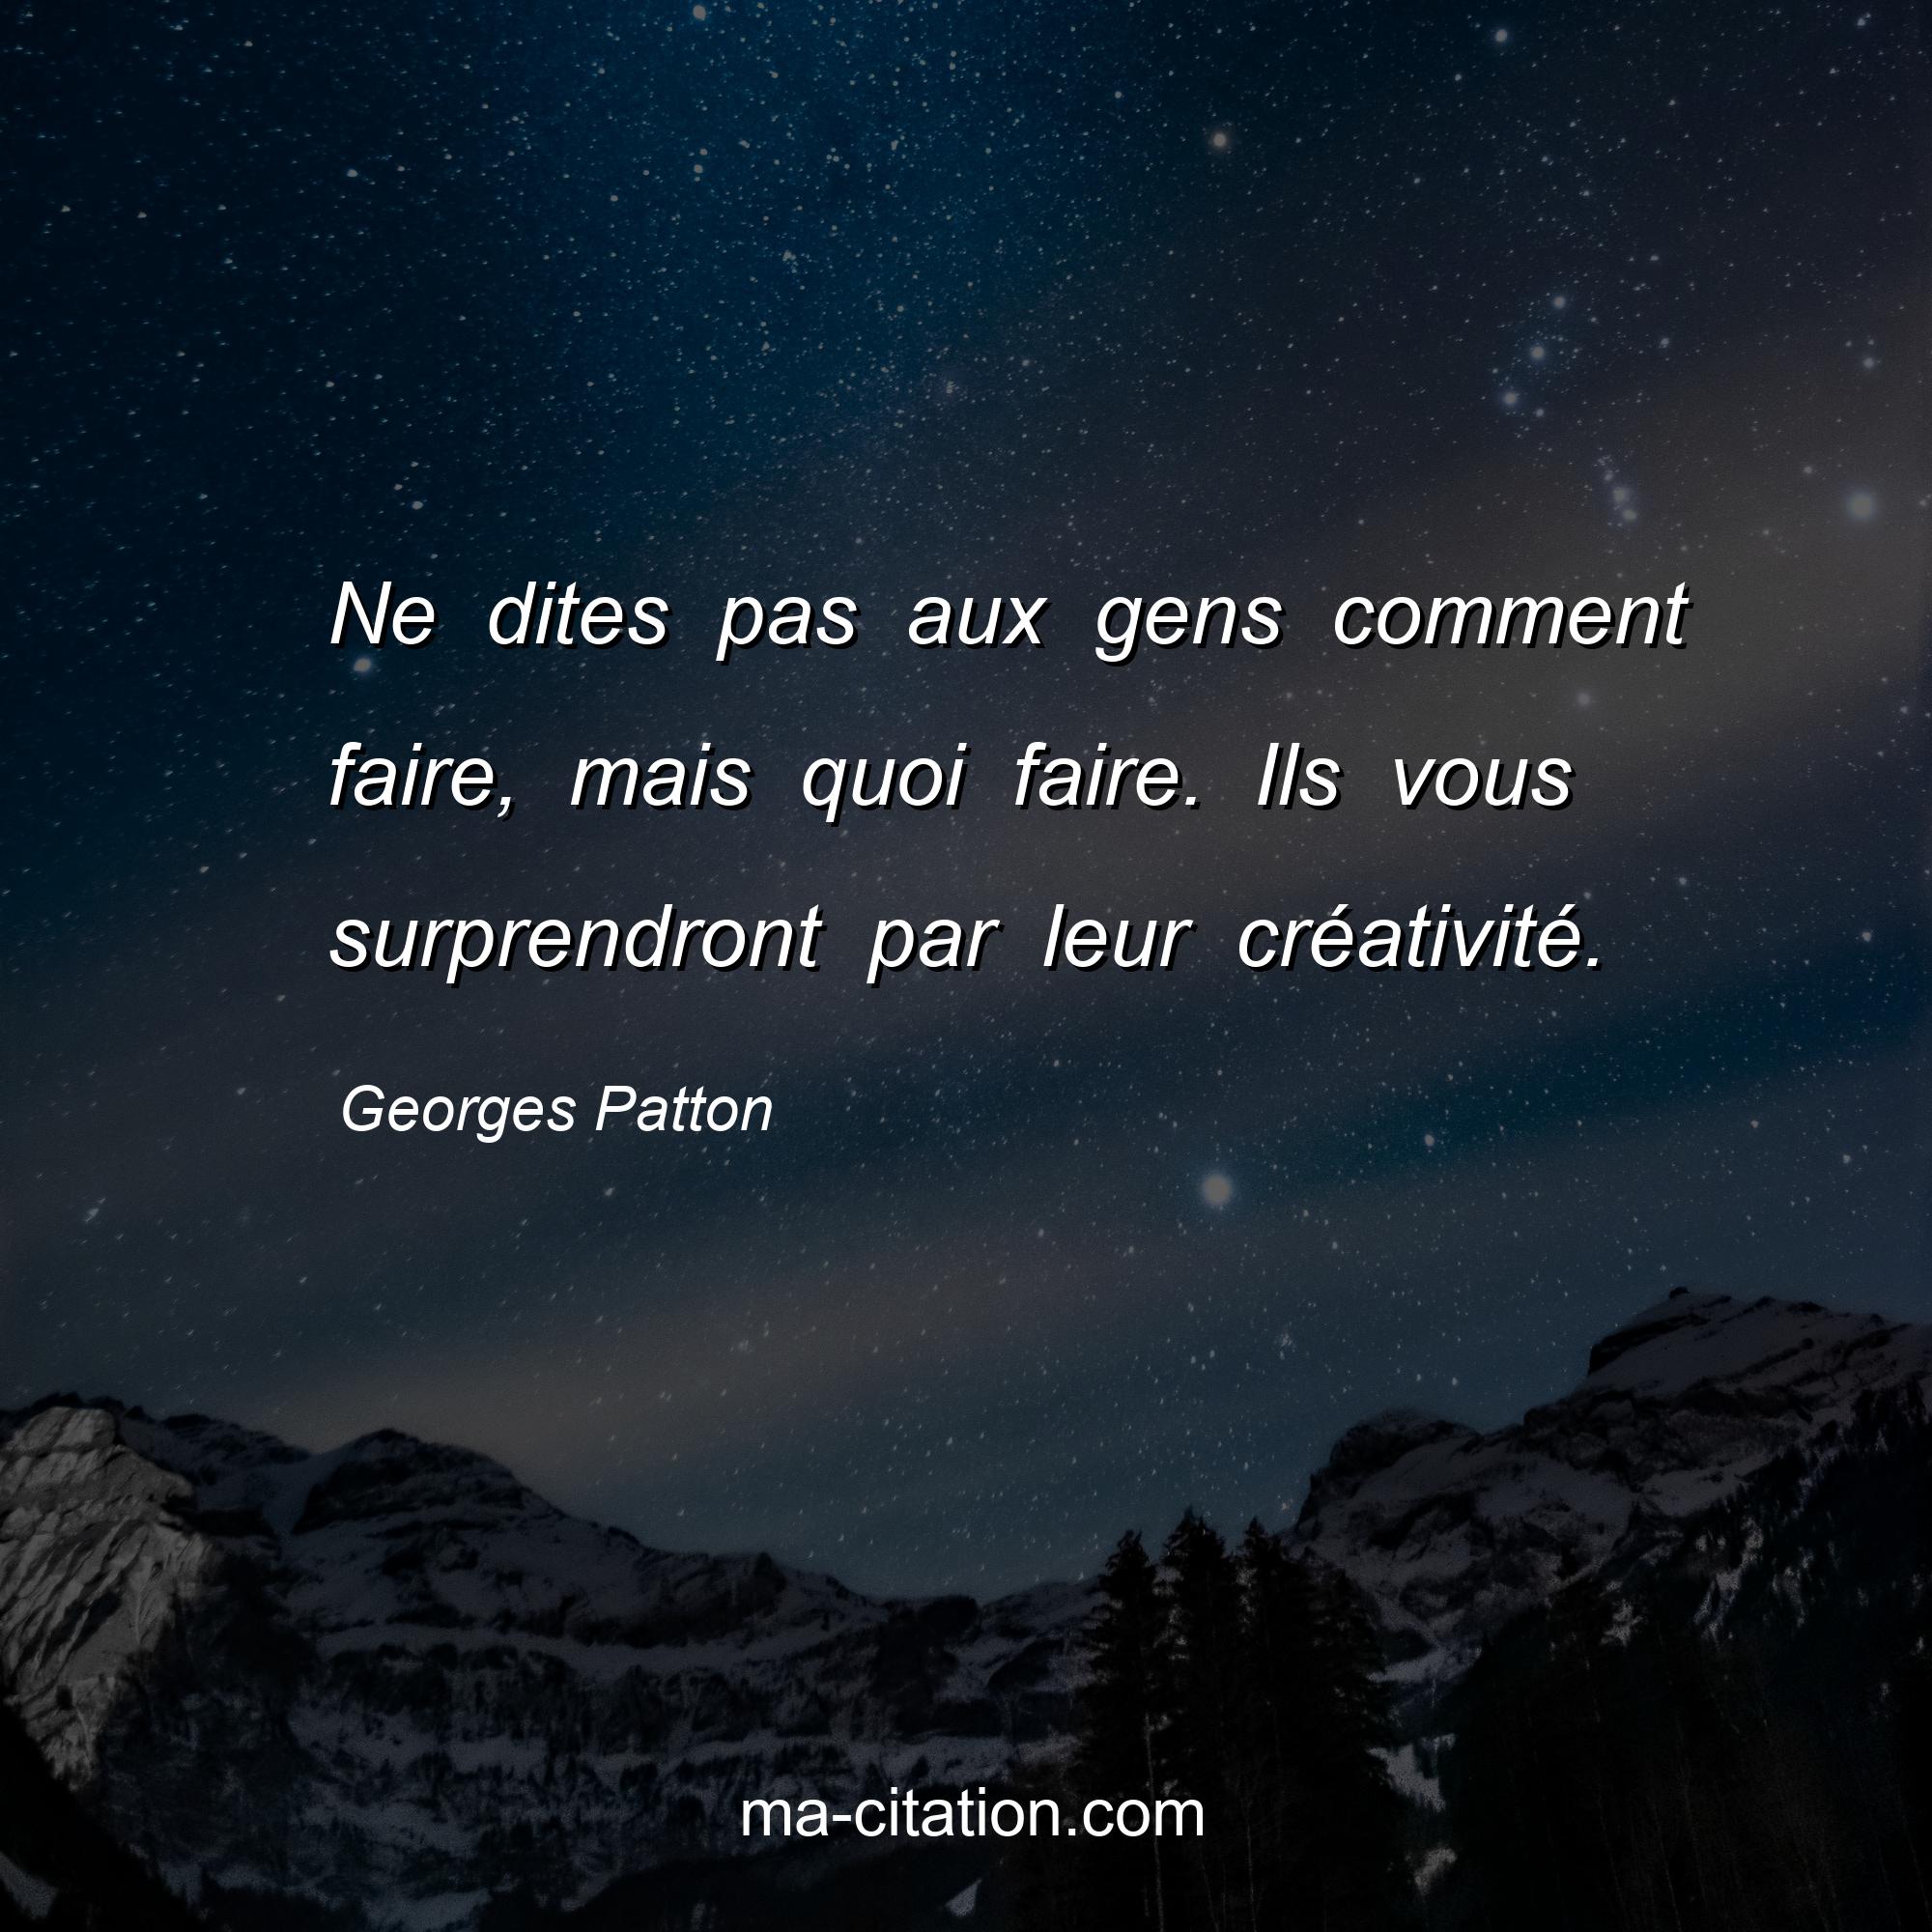 Georges Patton : Ne dites pas aux gens comment faire, mais quoi faire. Ils vous surprendront par leur créativité.